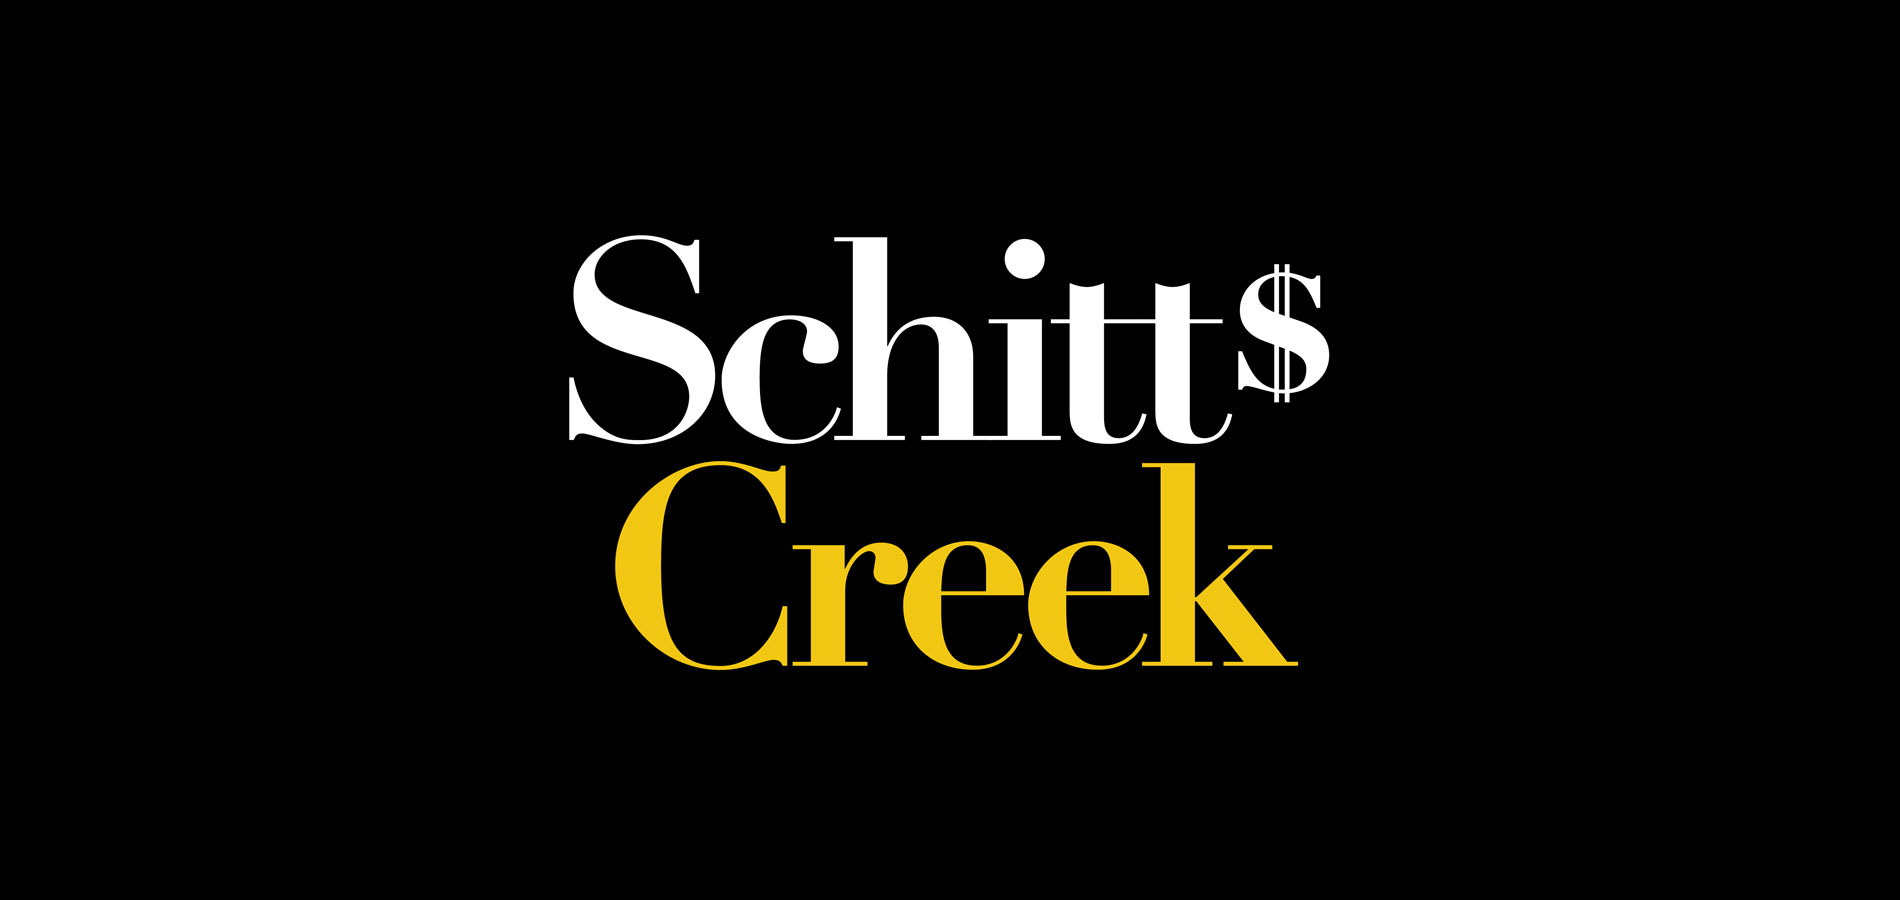 Schitt’s Creek